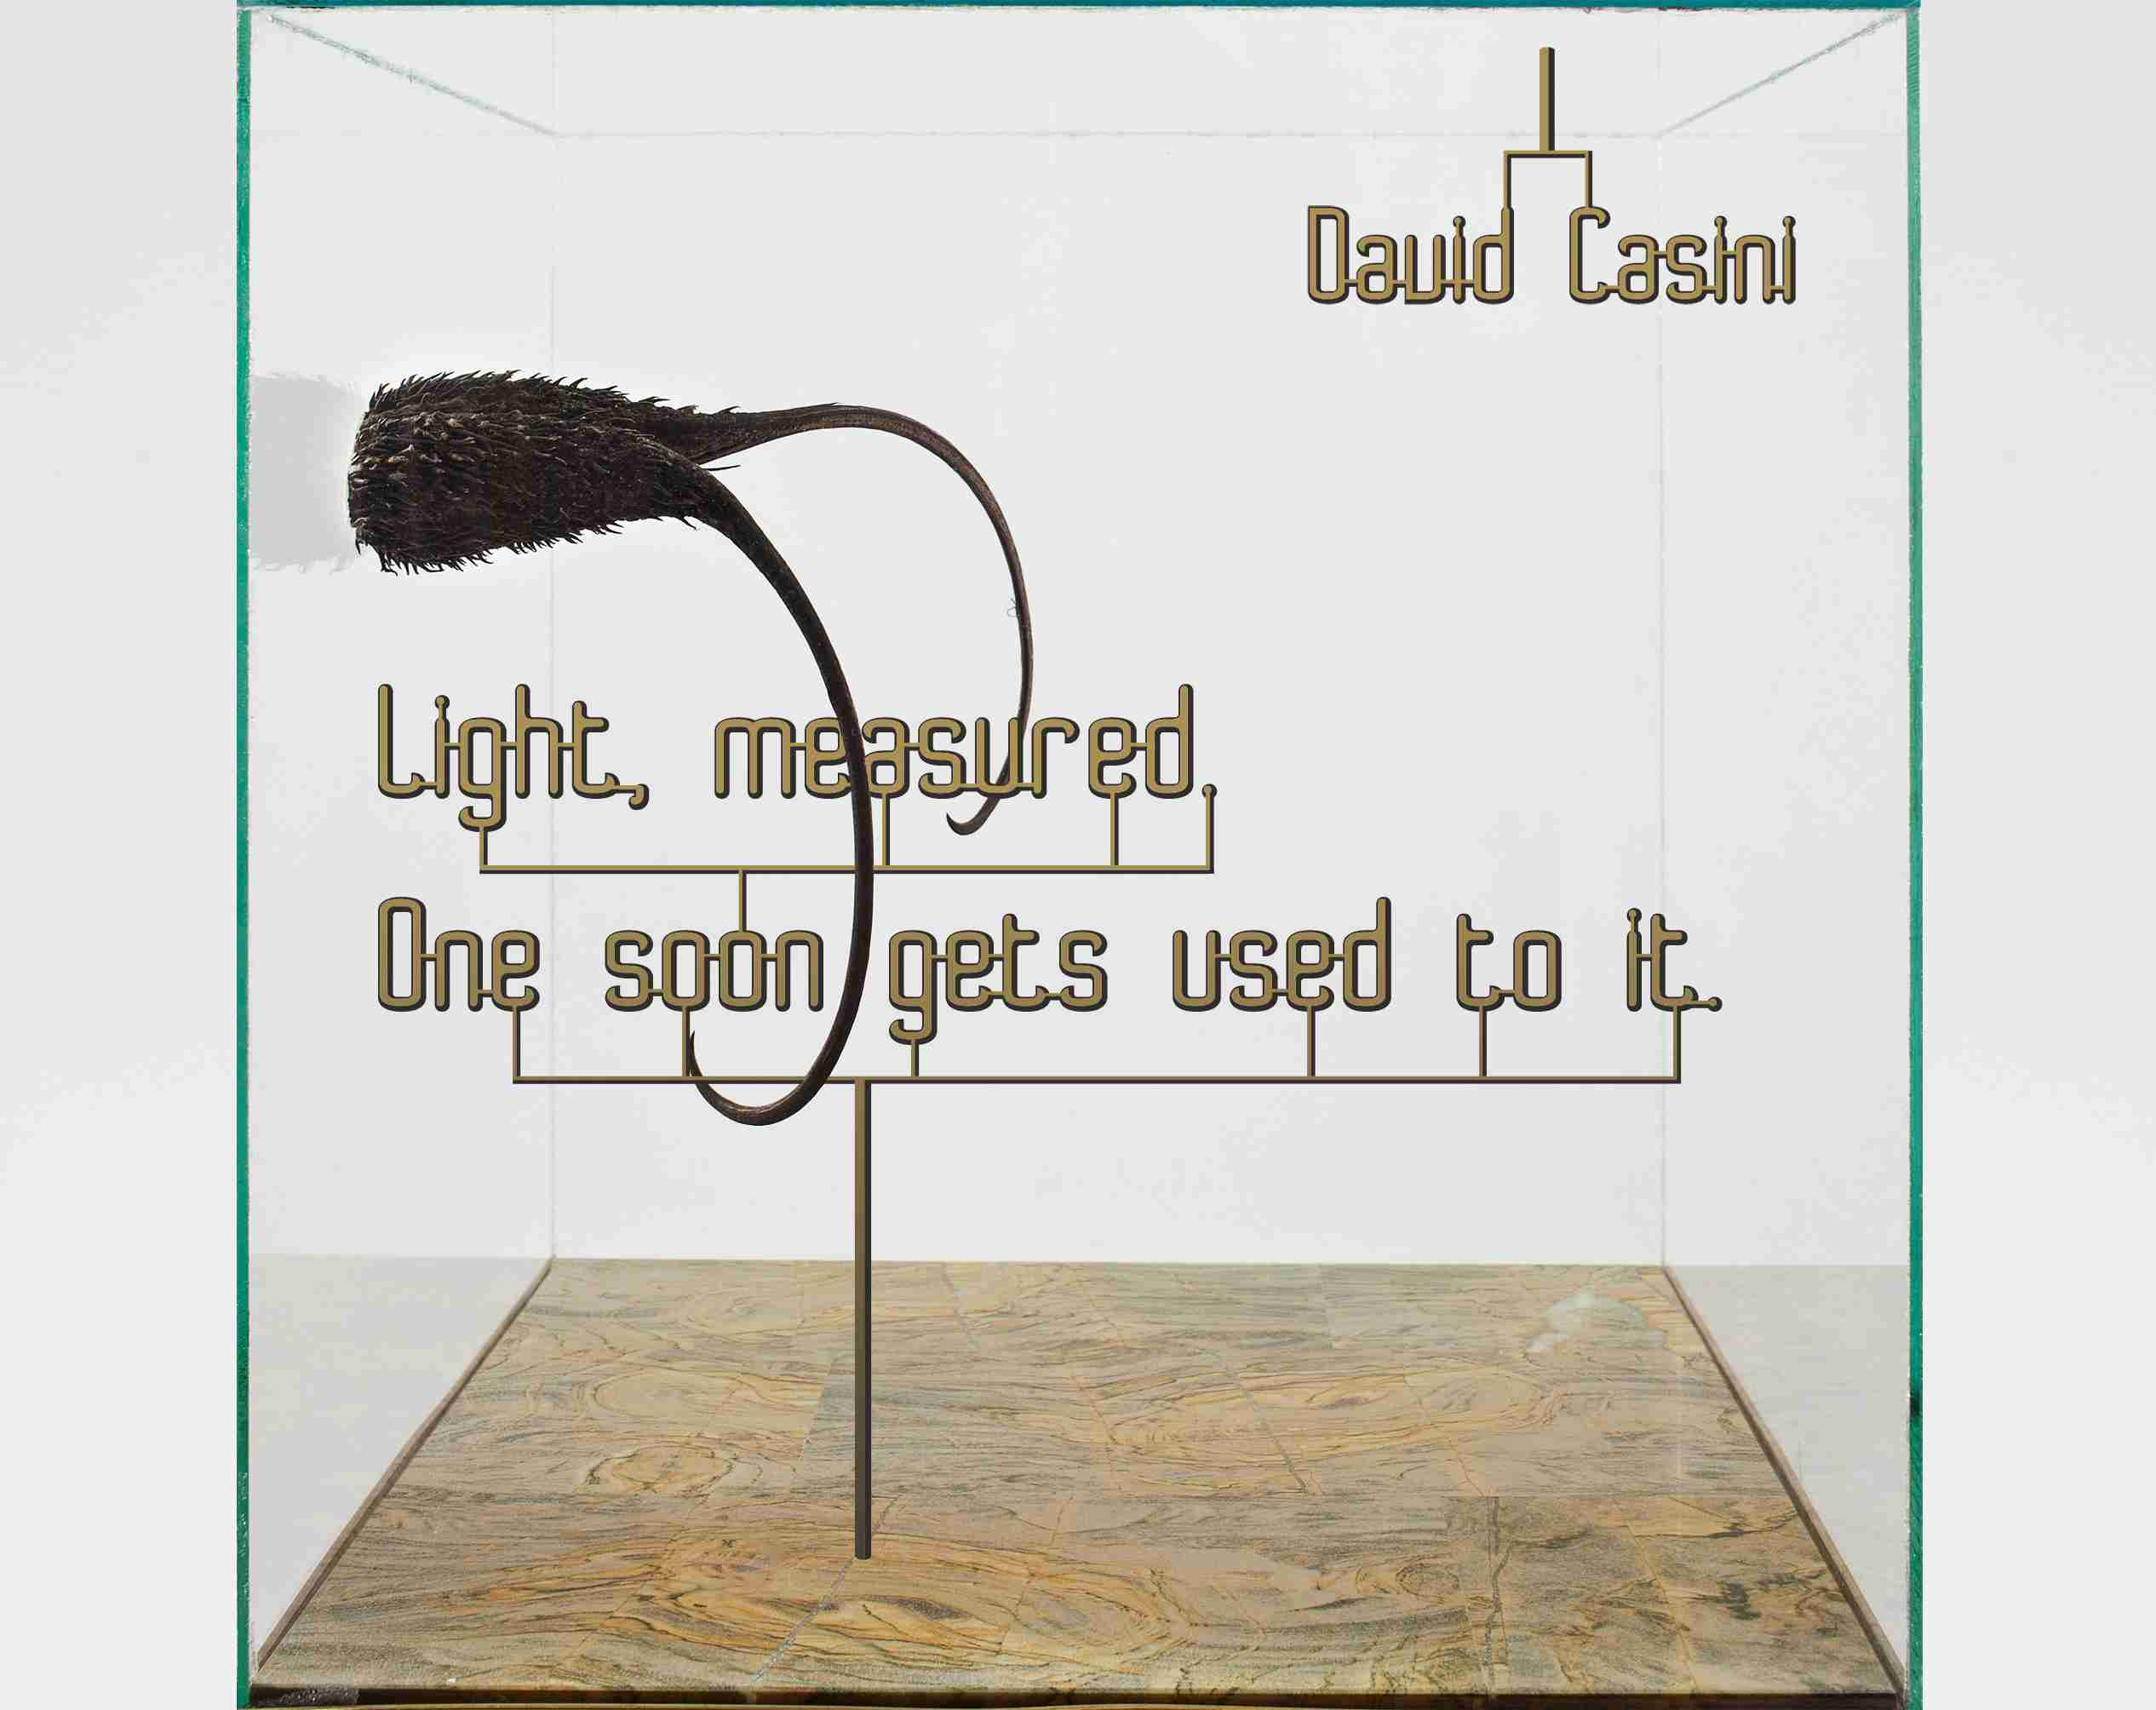 DAVID CASINI,  Leggero, misurato. Ci si abitua presto Light, measured. One soon gets used to it